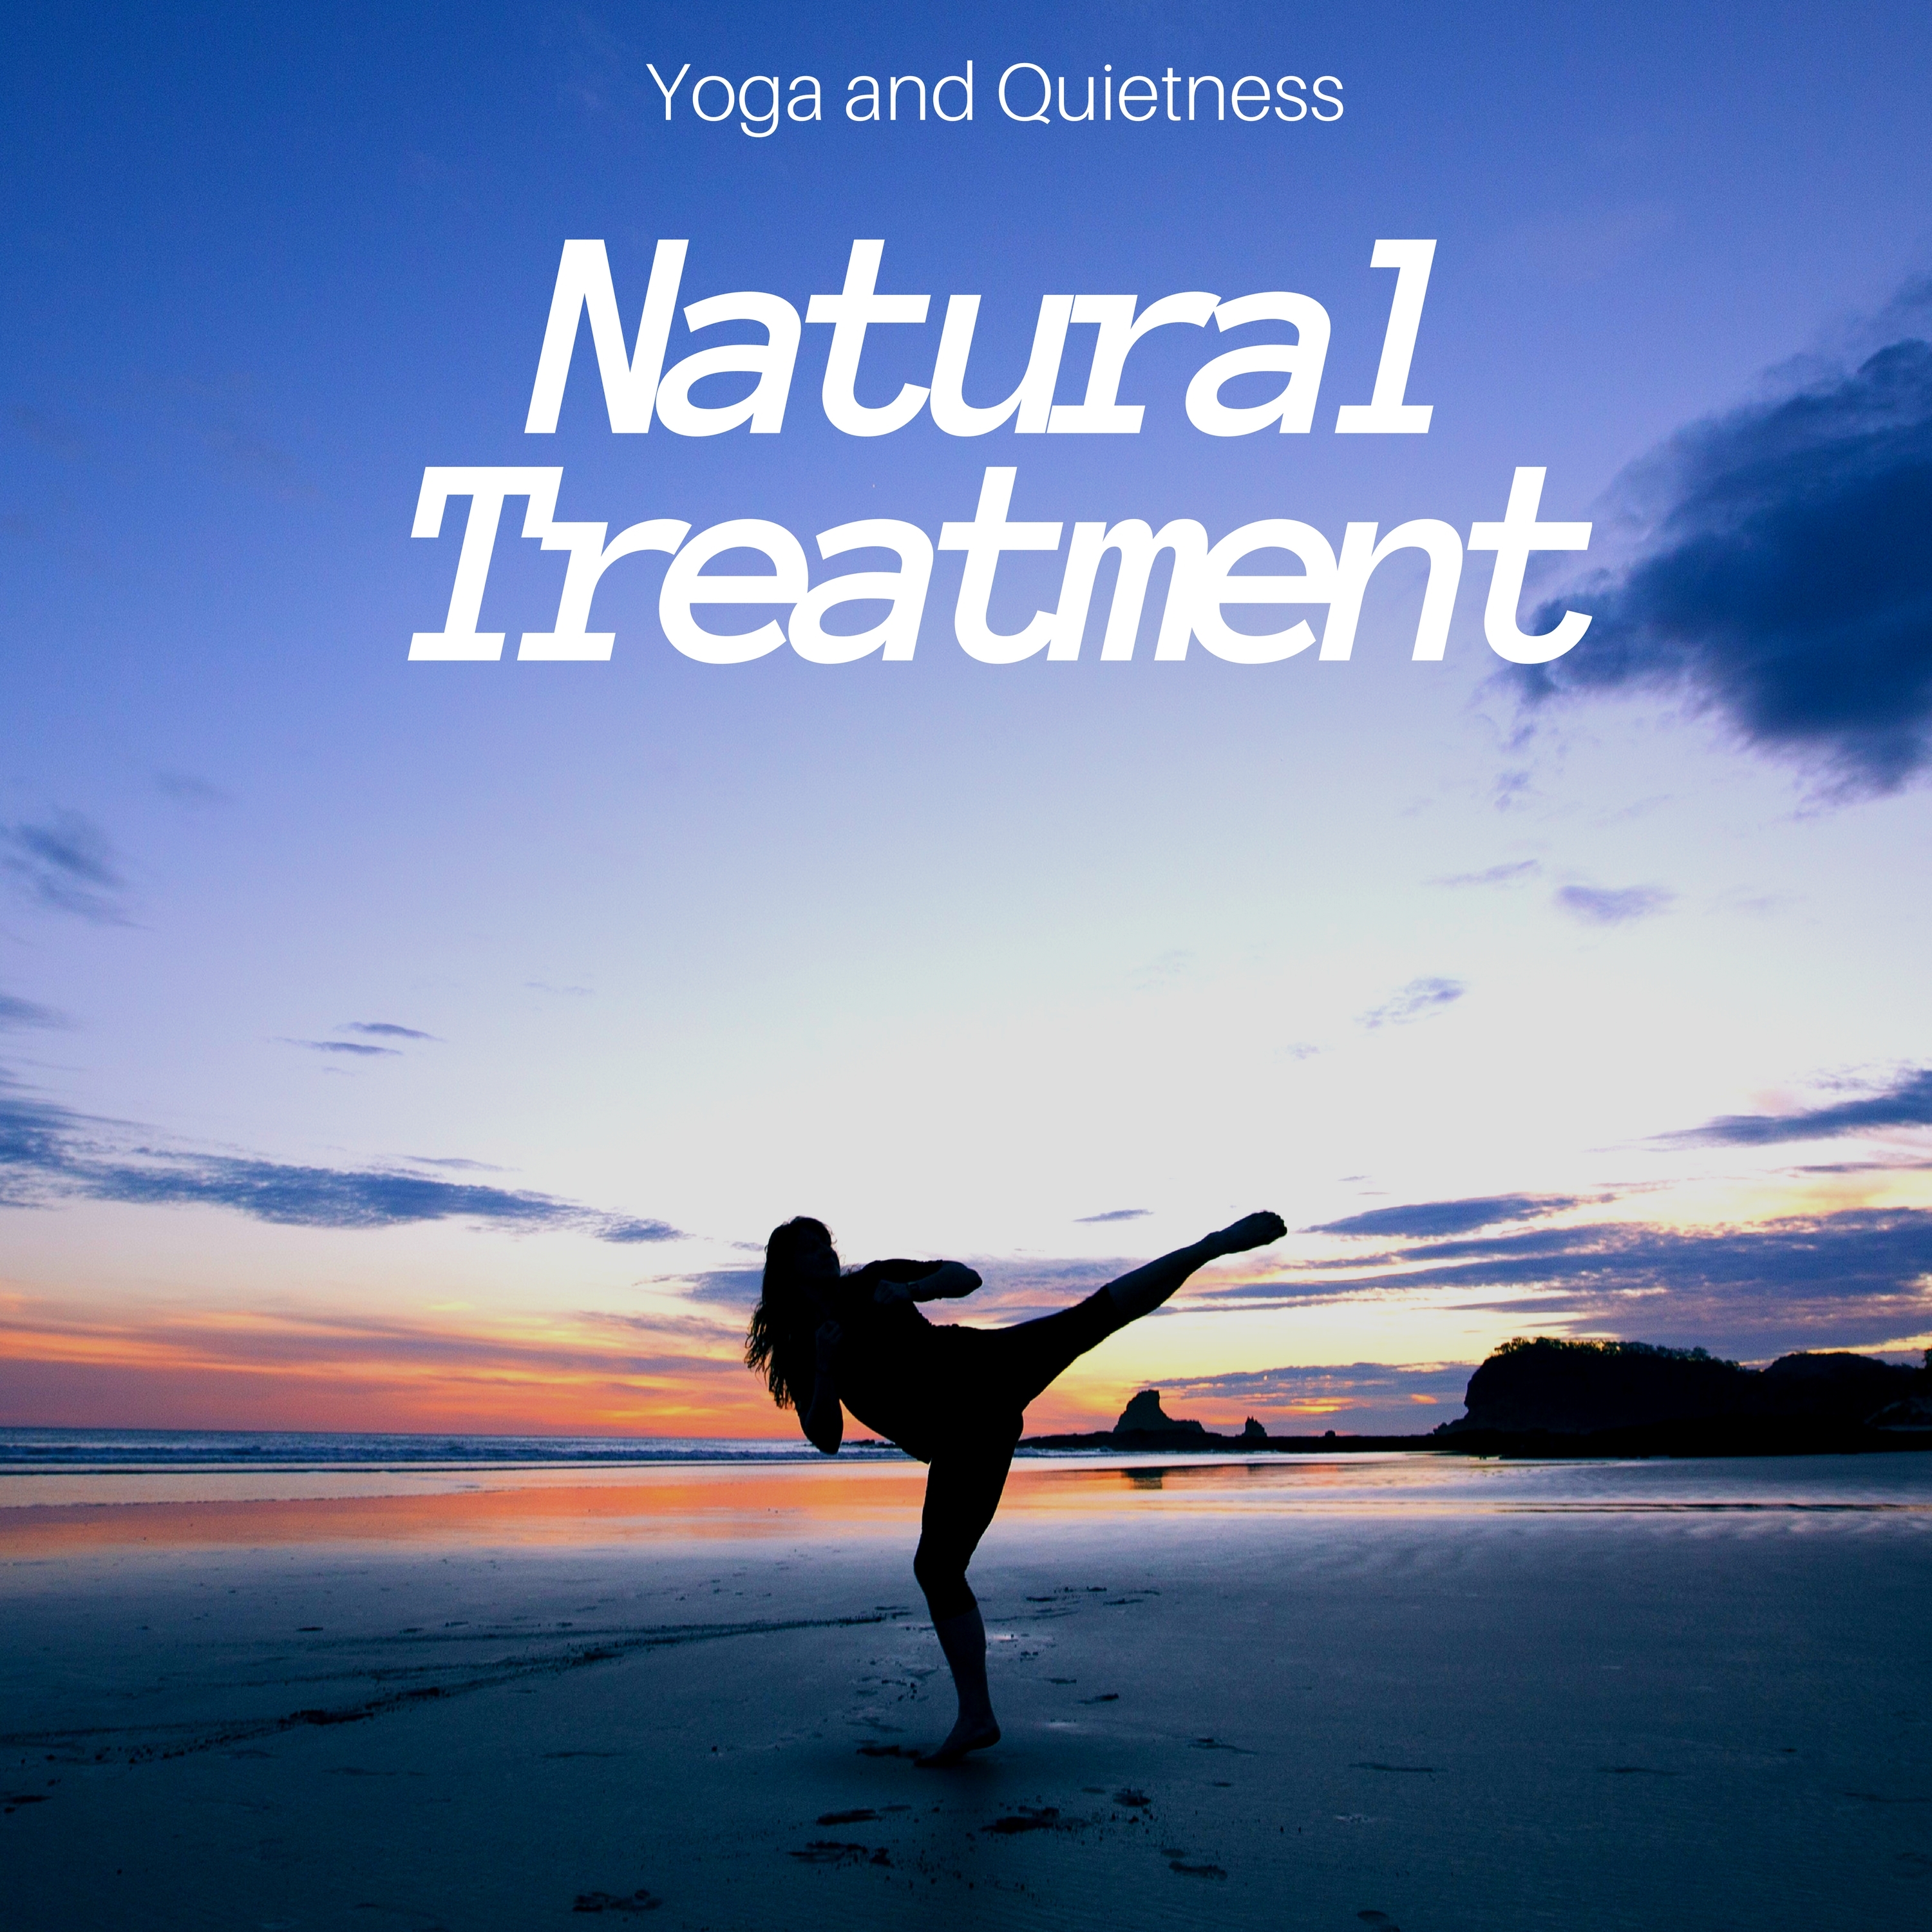 Yoga and Quietness